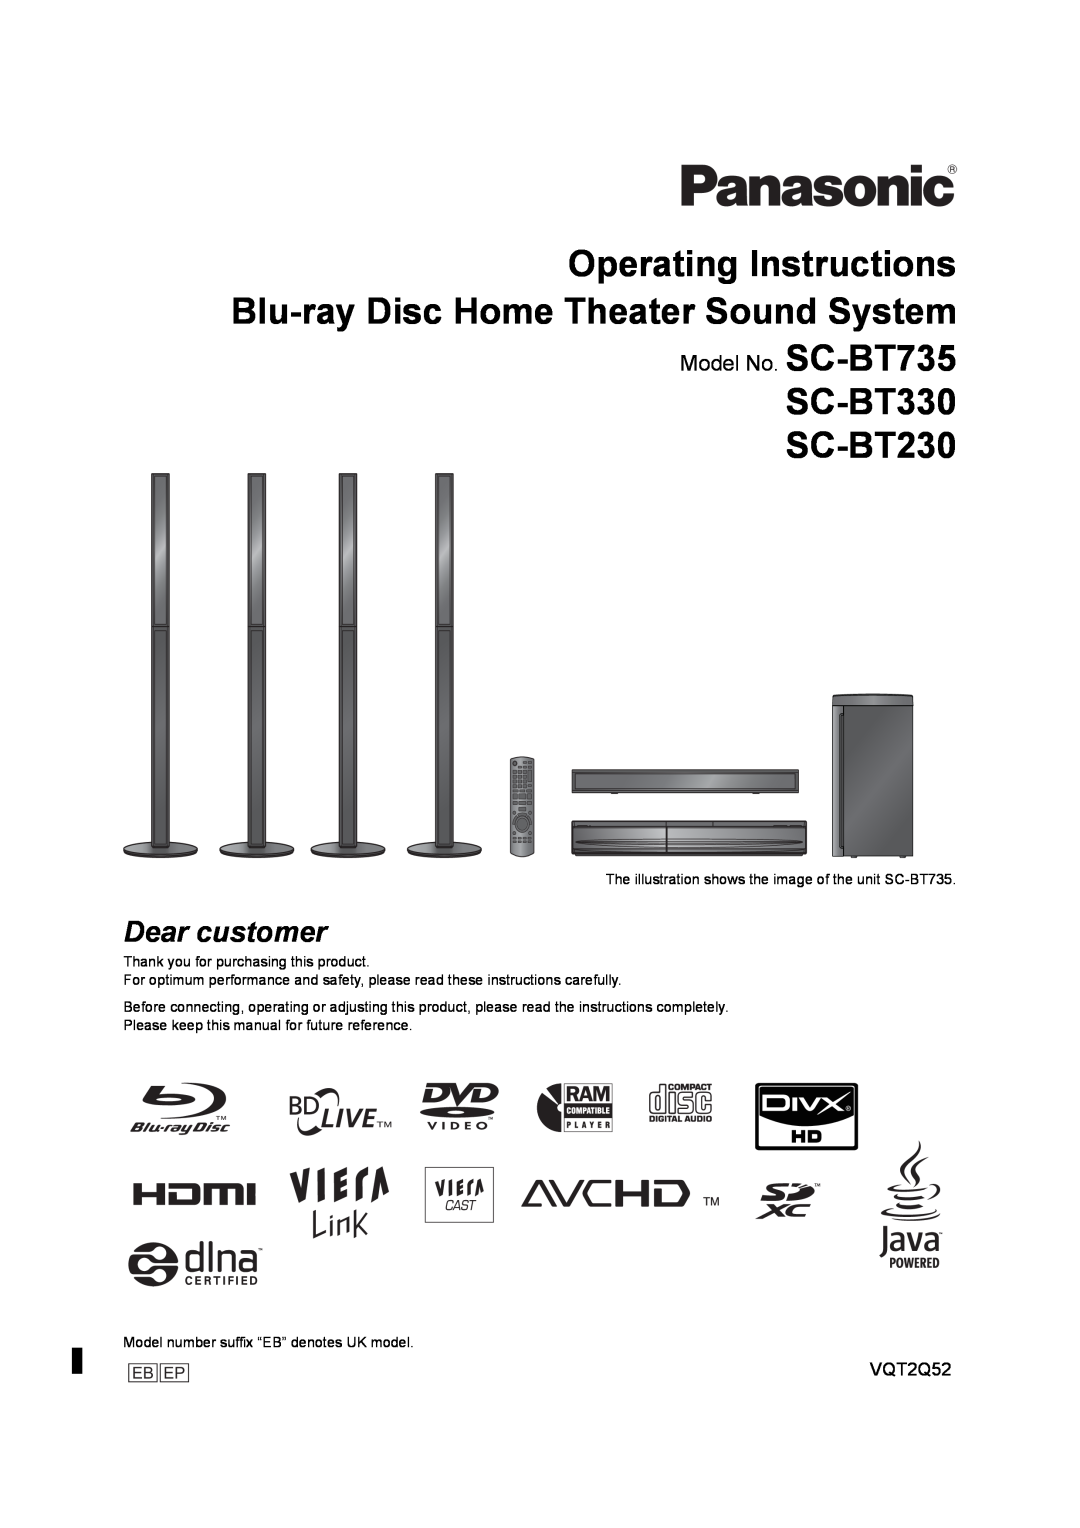 Philips operating instructions SC-BT330 SC-BT230, Model No. SC-BT735, Dear customer 